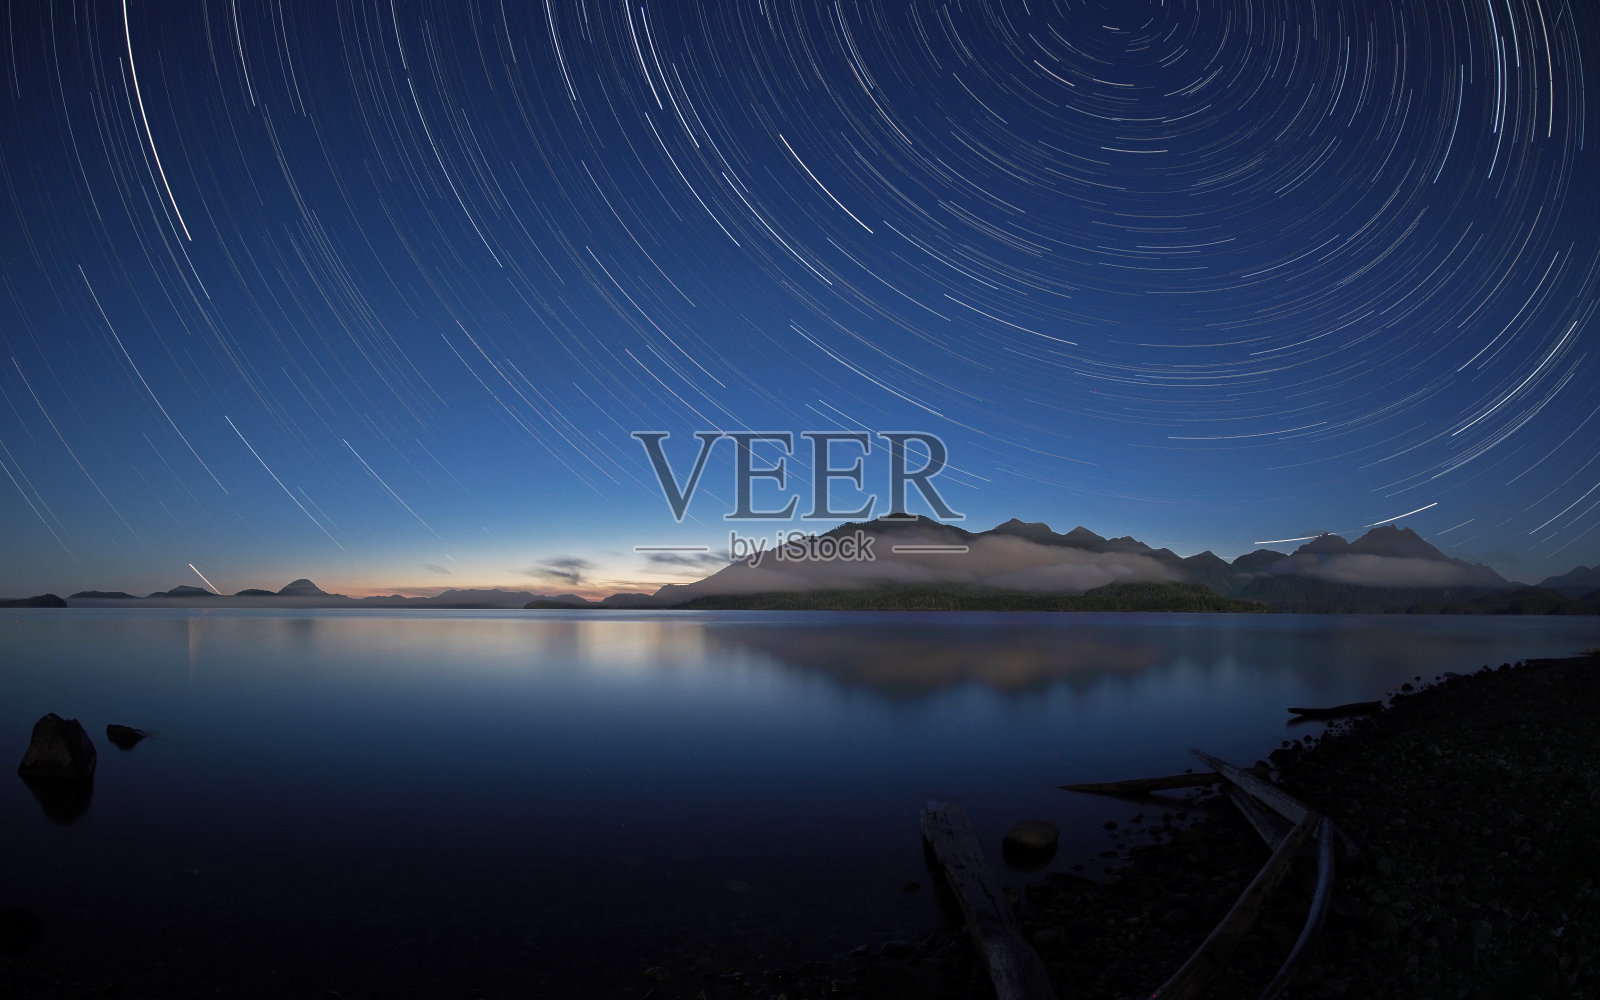 加拿大温哥华岛肯尼迪湖上的星星照片摄影图片